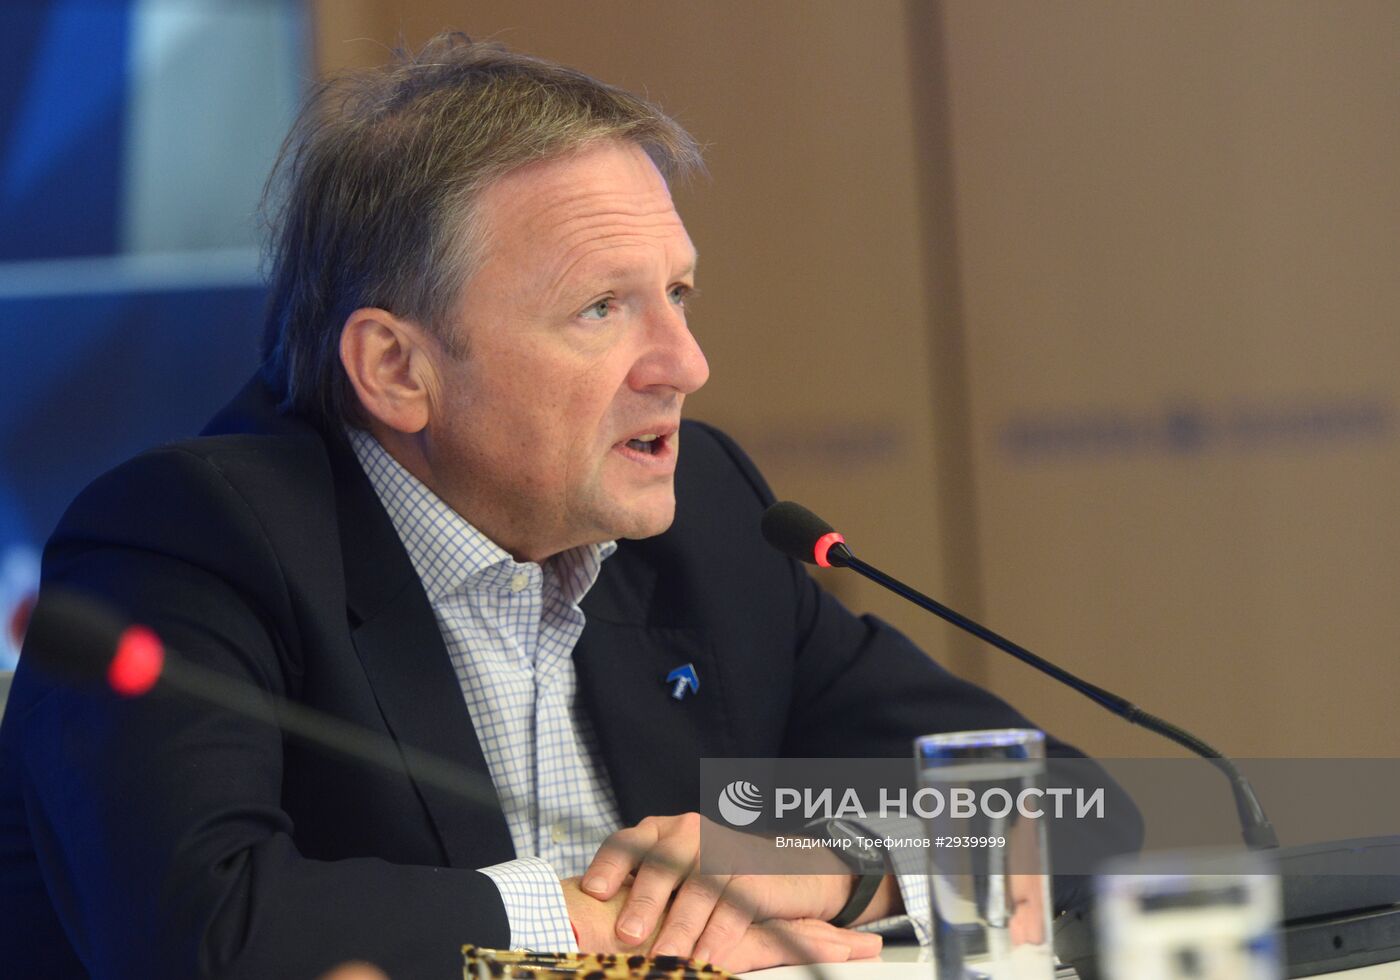 Пресс-конференция лидера Партии роста Б. Титова по итогам выборов